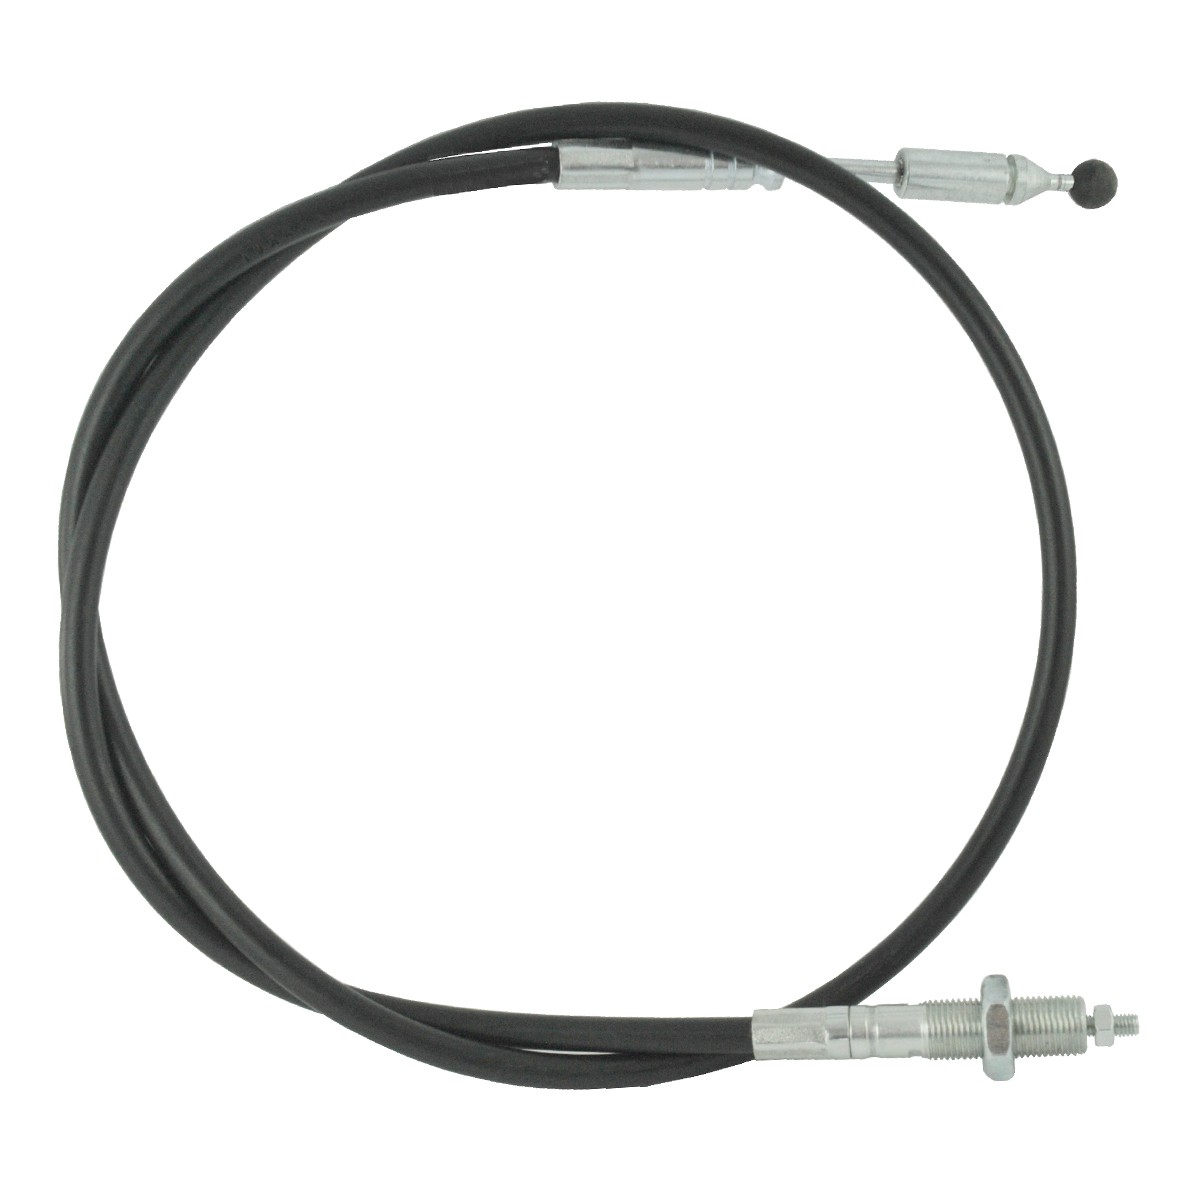 Kabel für Hydraulikverteiler mit Joystick 1000 mm